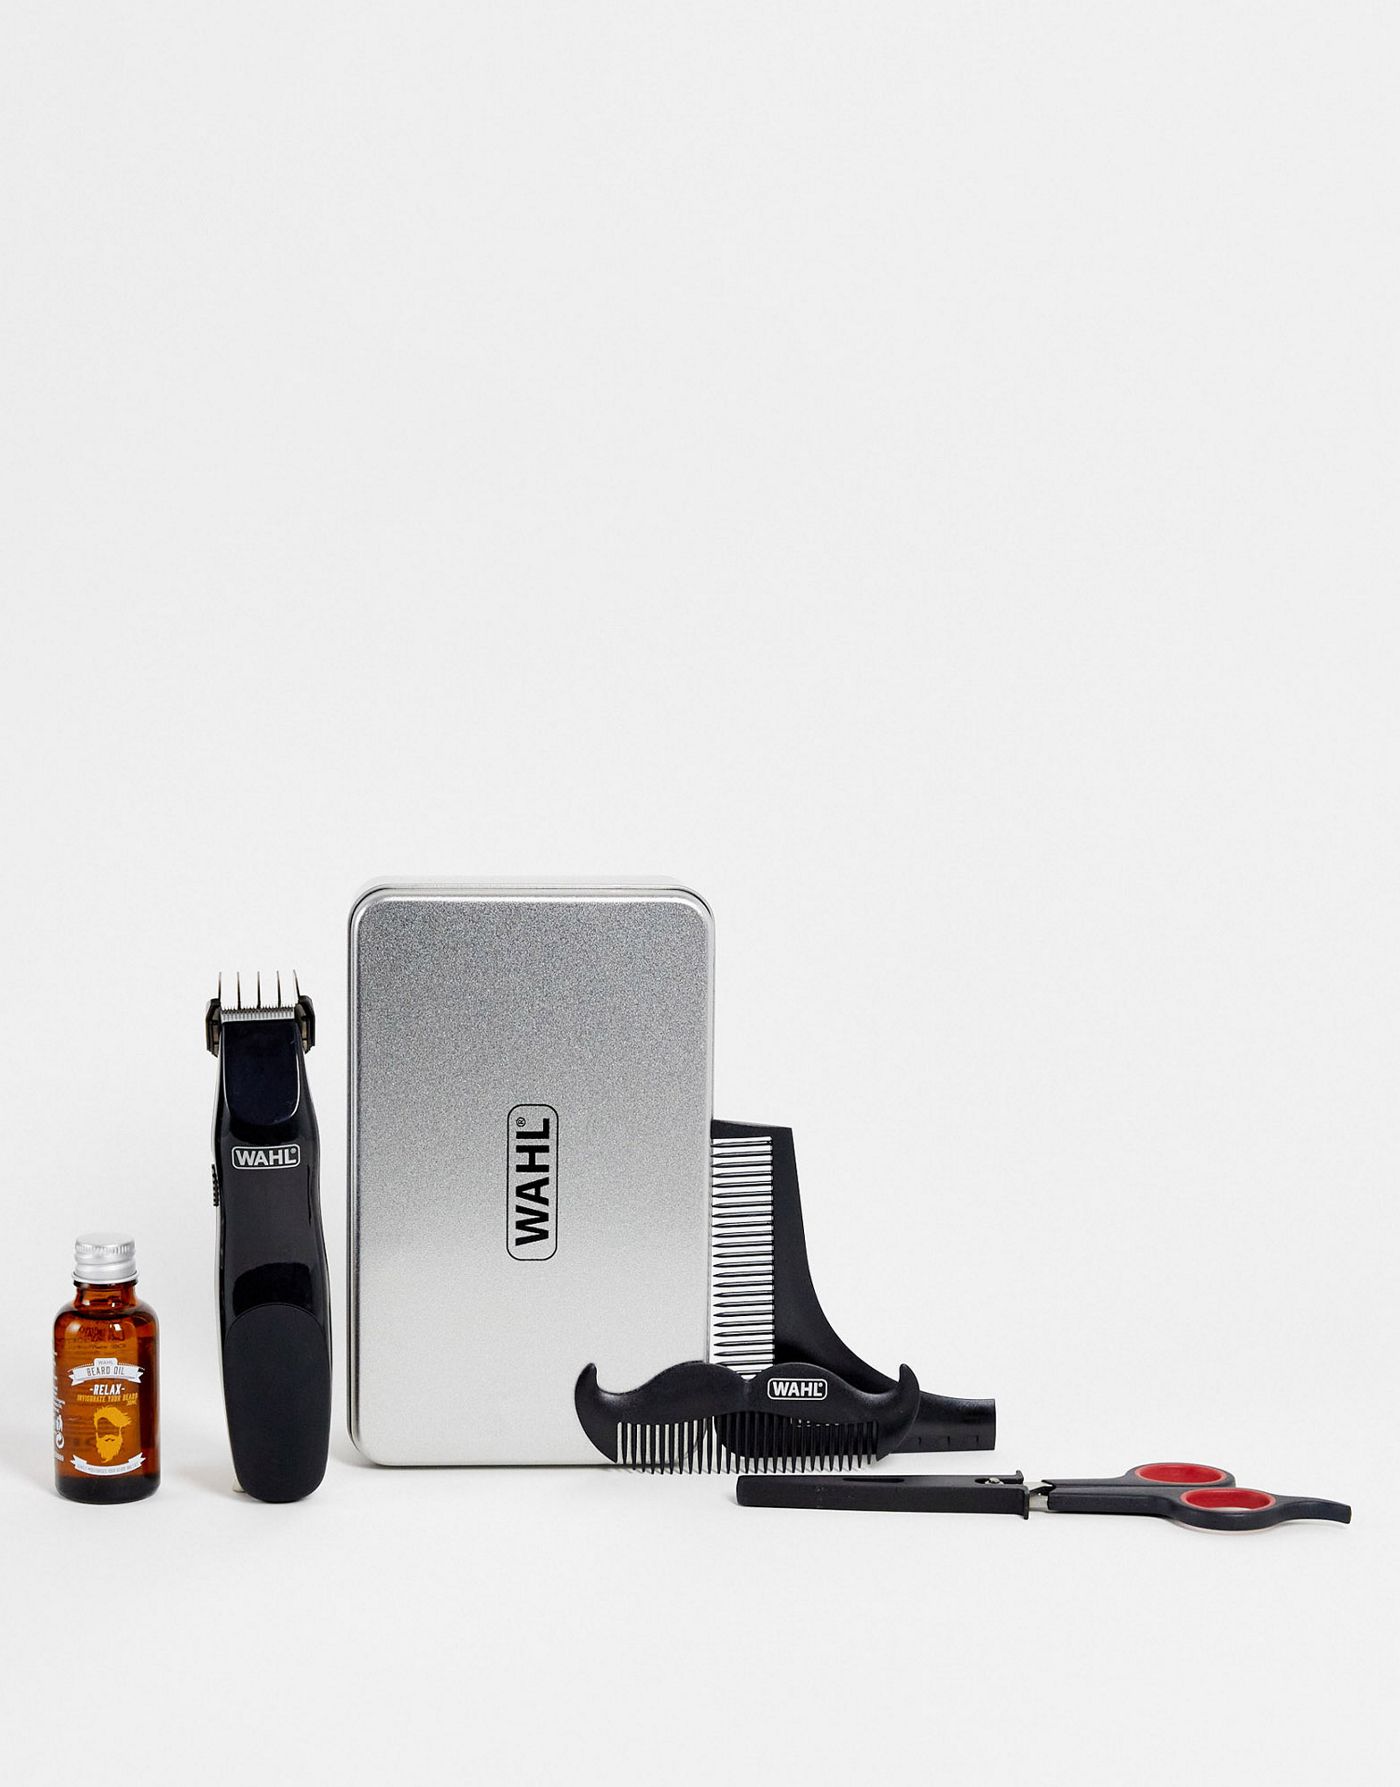 Wahl Beard Grooming Trimmer Kit